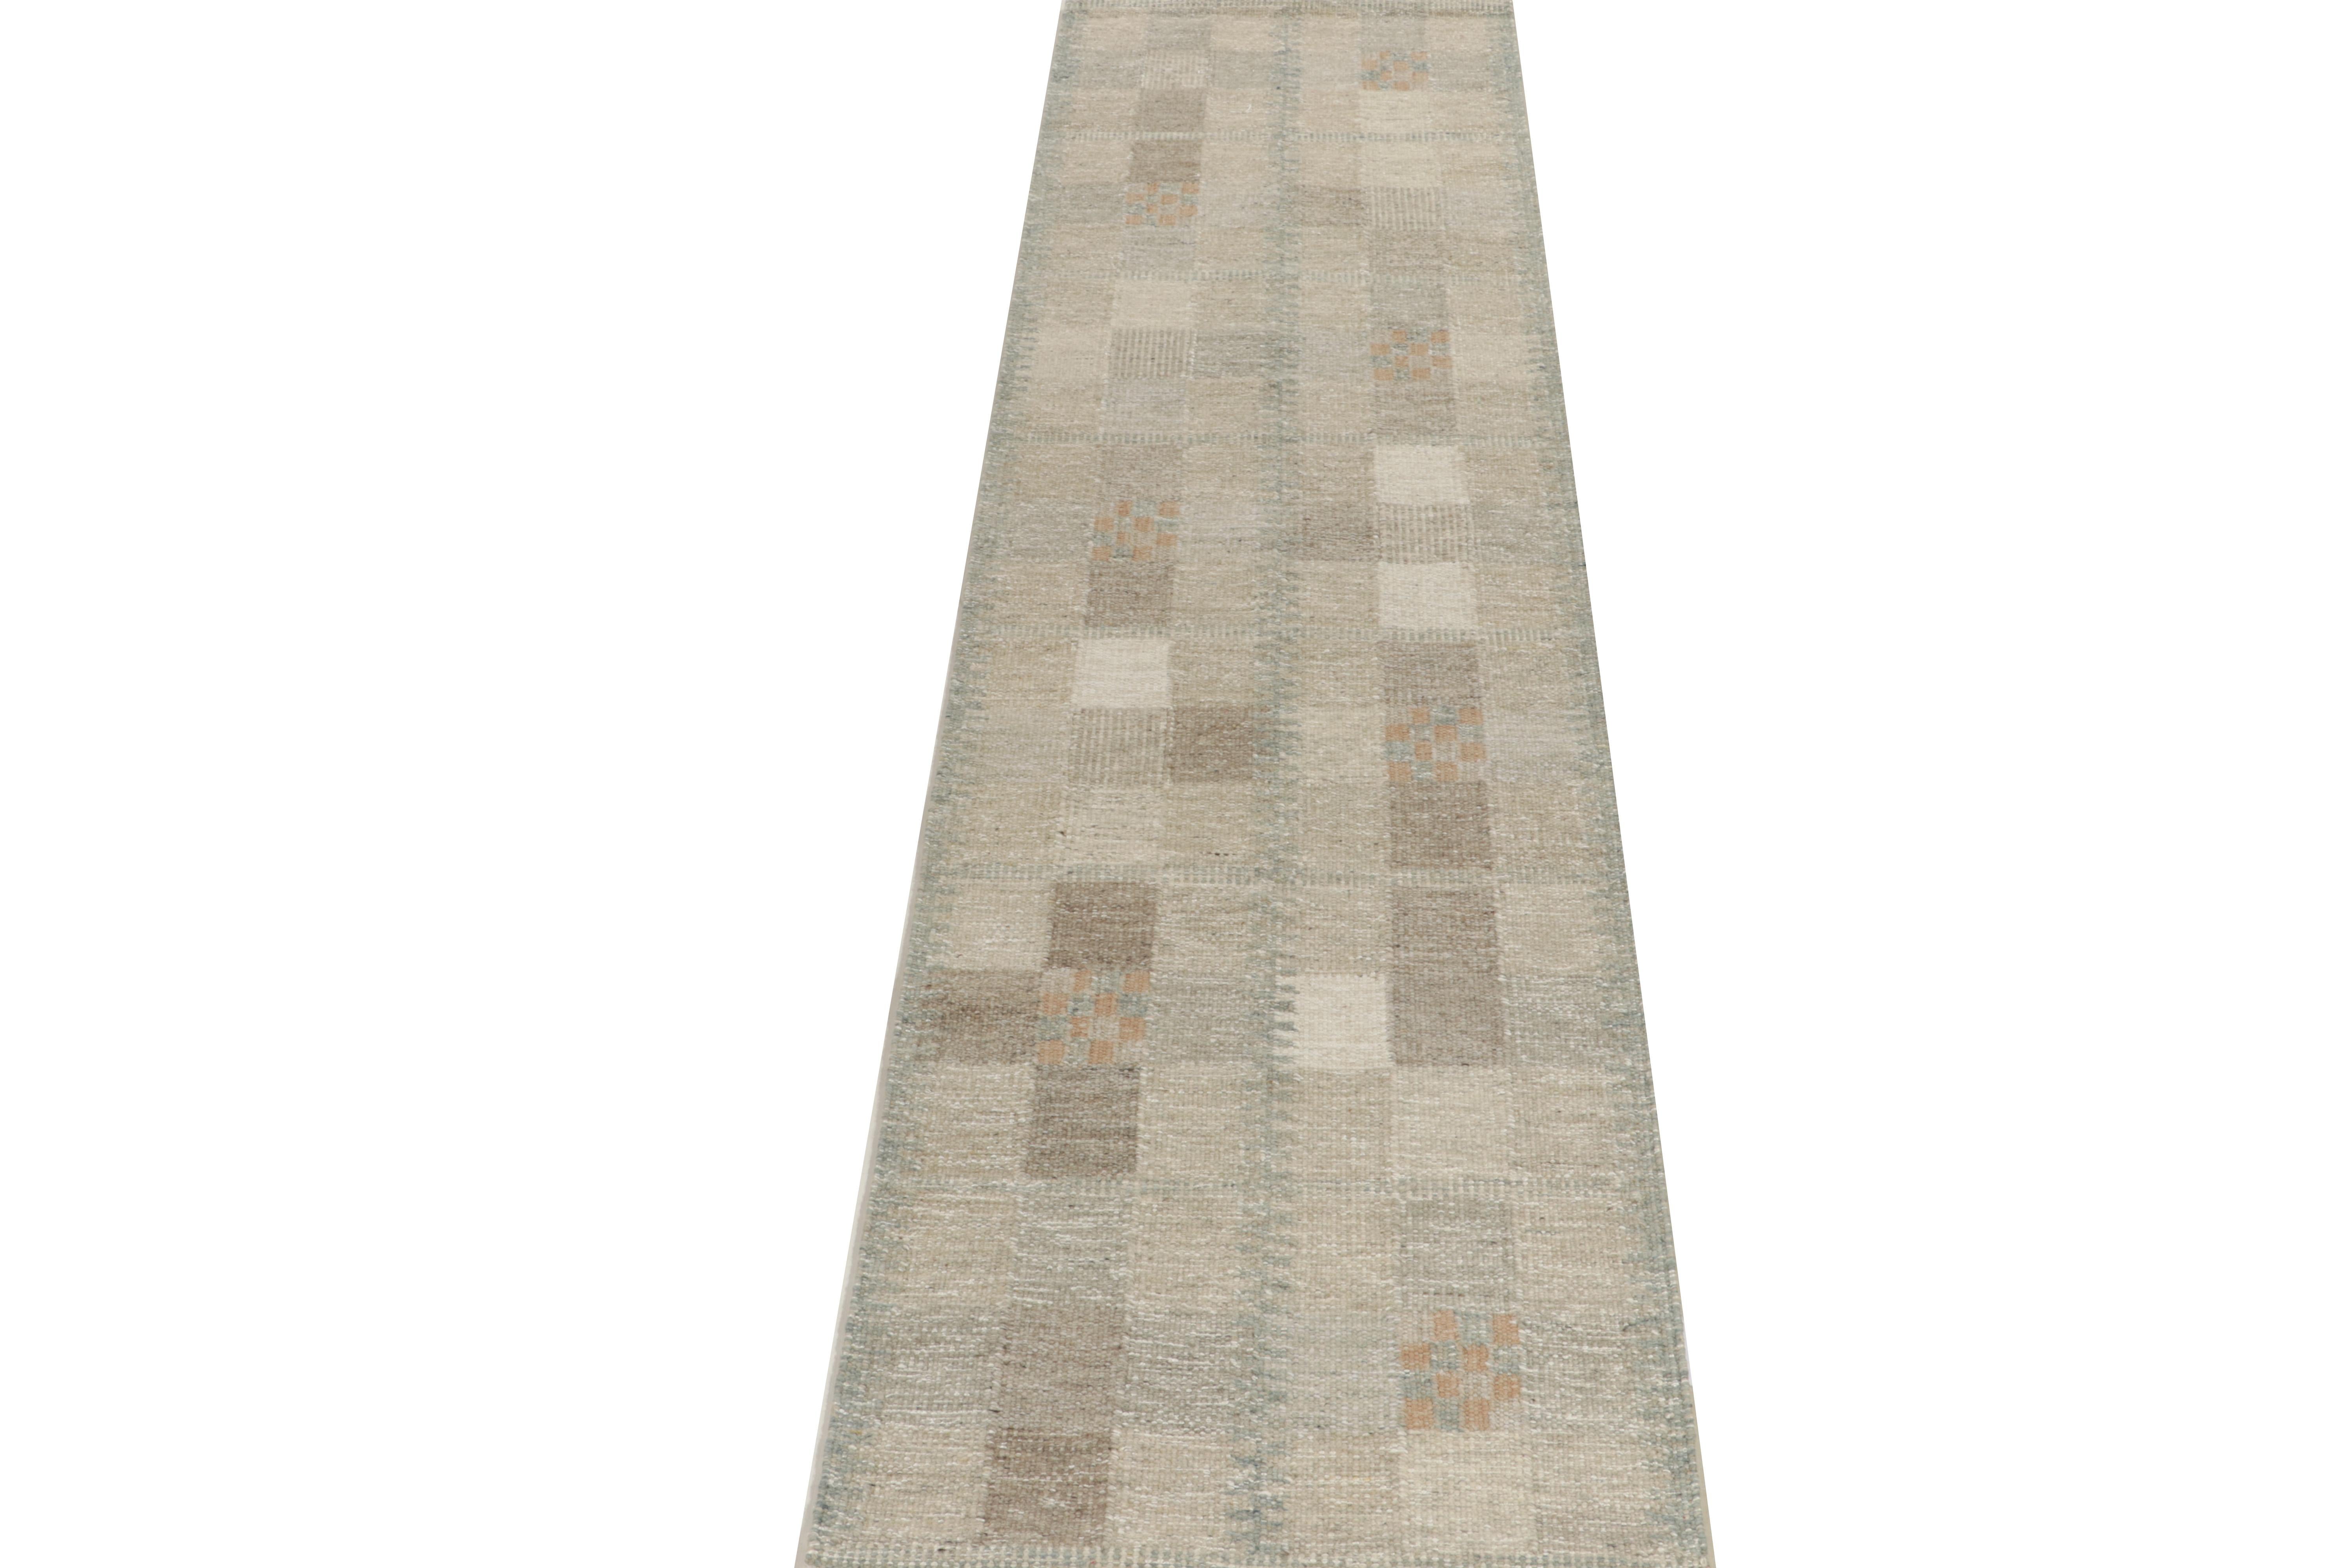 Un kilim 3x12 de style suédois, issu de nos sélections primées d'armures plates scandinaves. Le tapis présente un jeu sophistiqué de beige-brun et de bleu-gris pour une ambiance fraîche, habilement mariée à la géométrie pour un mouvement défini.